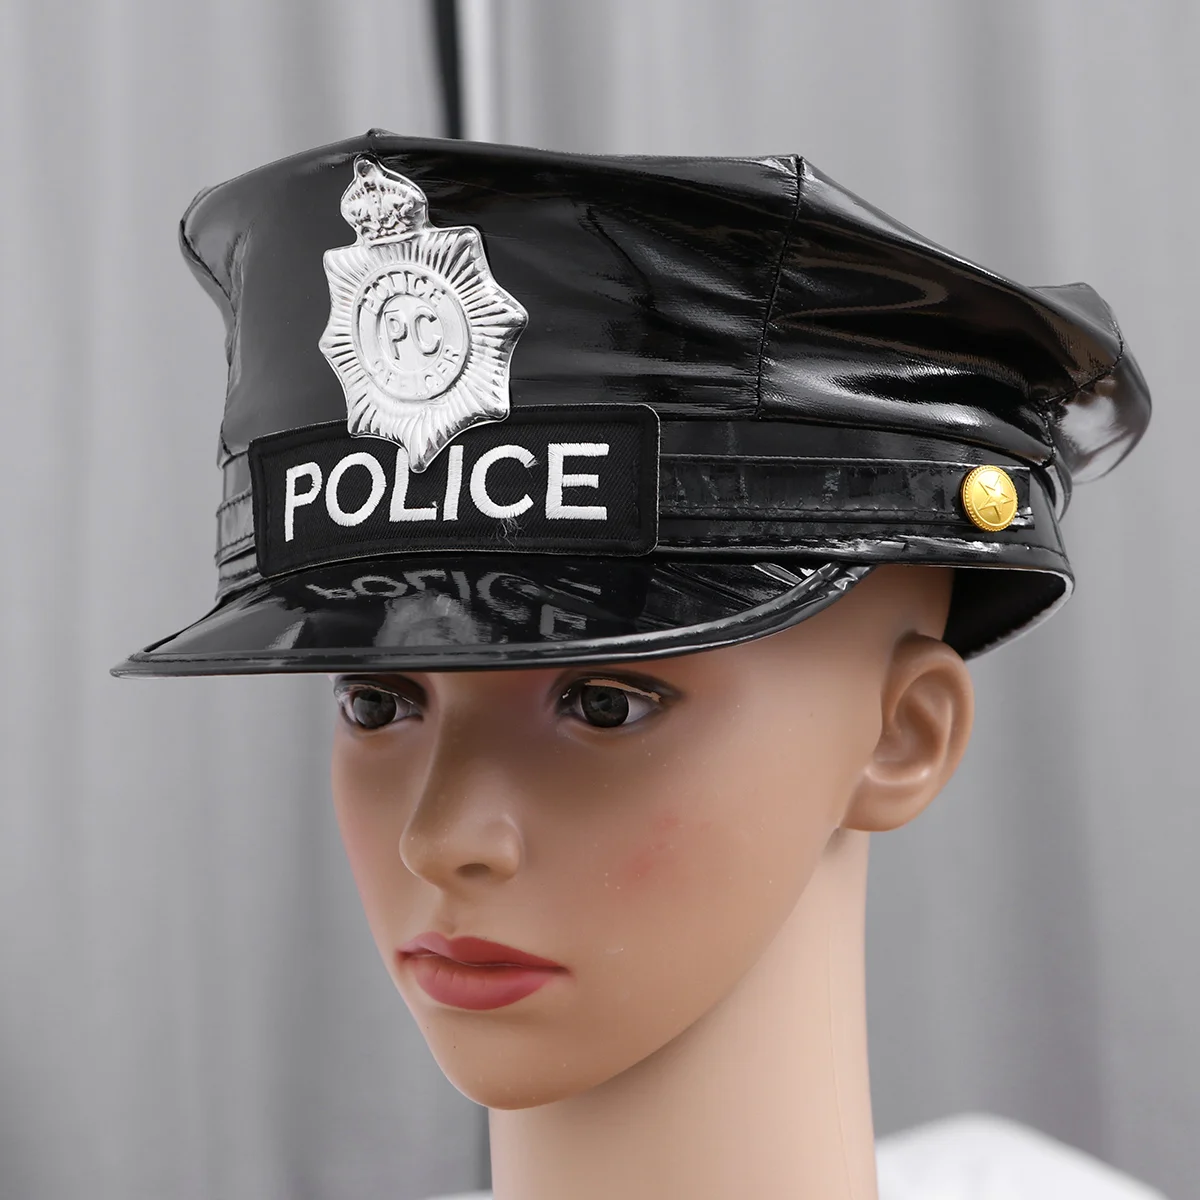 

Головной убор полицейский головной убор значок восьмиугольный полицейский головной убор офицер головной убор аксессуары